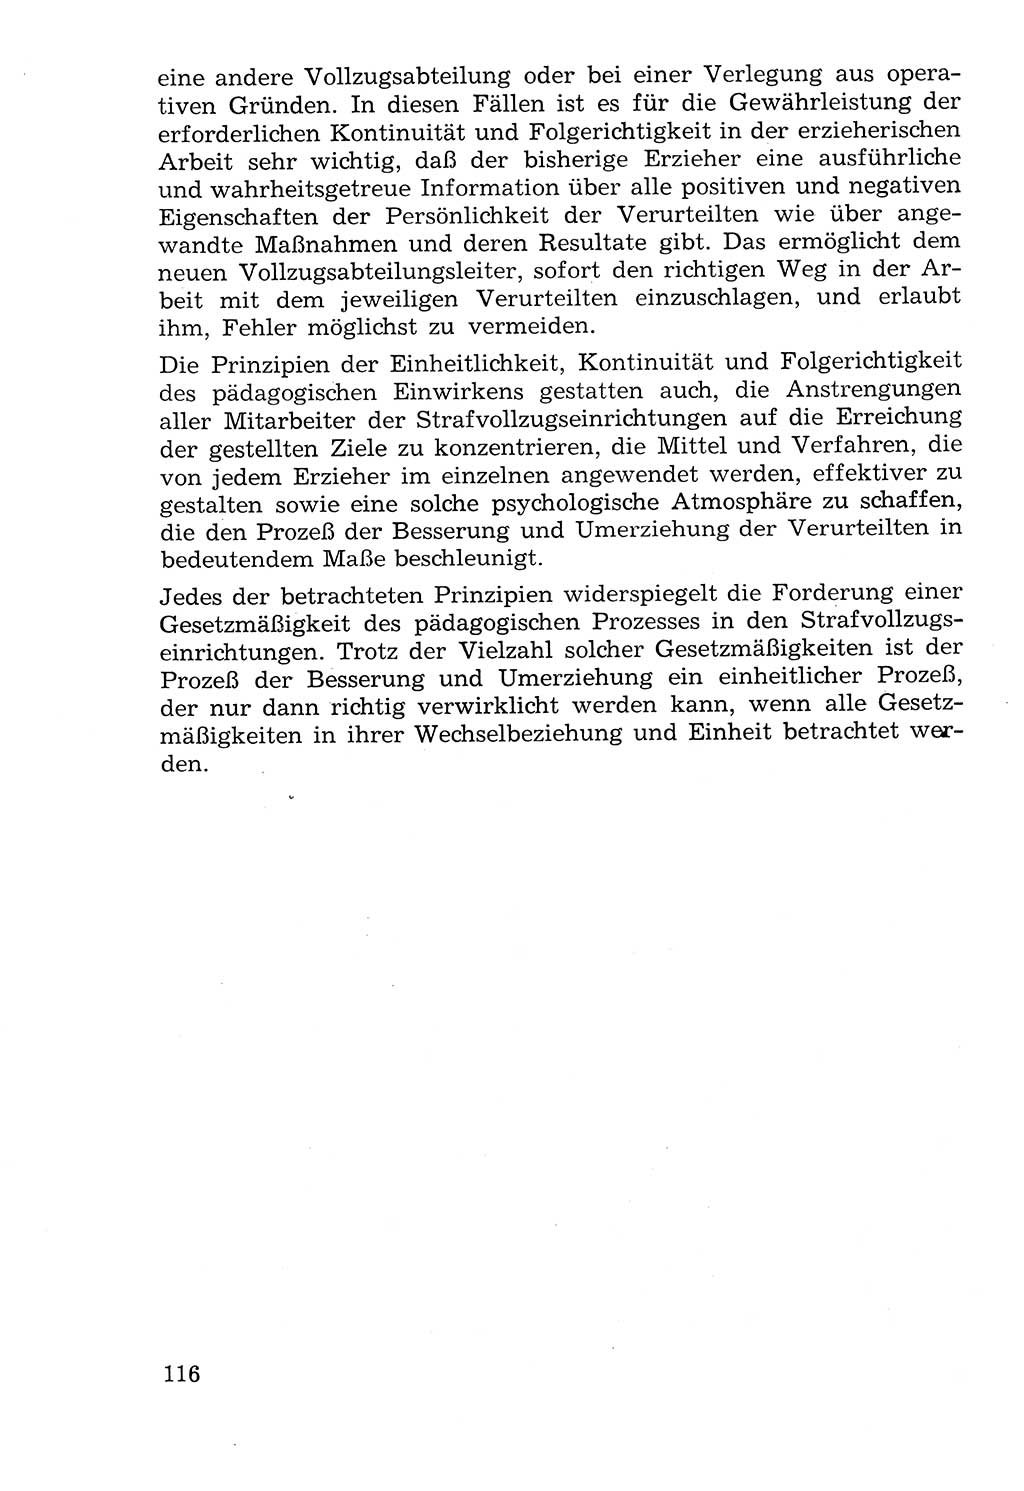 Lehrbuch der Strafvollzugspädagogik [Deutsche Demokratische Republik (DDR)] 1969, Seite 116 (Lb. SV-Pd. DDR 1969, S. 116)